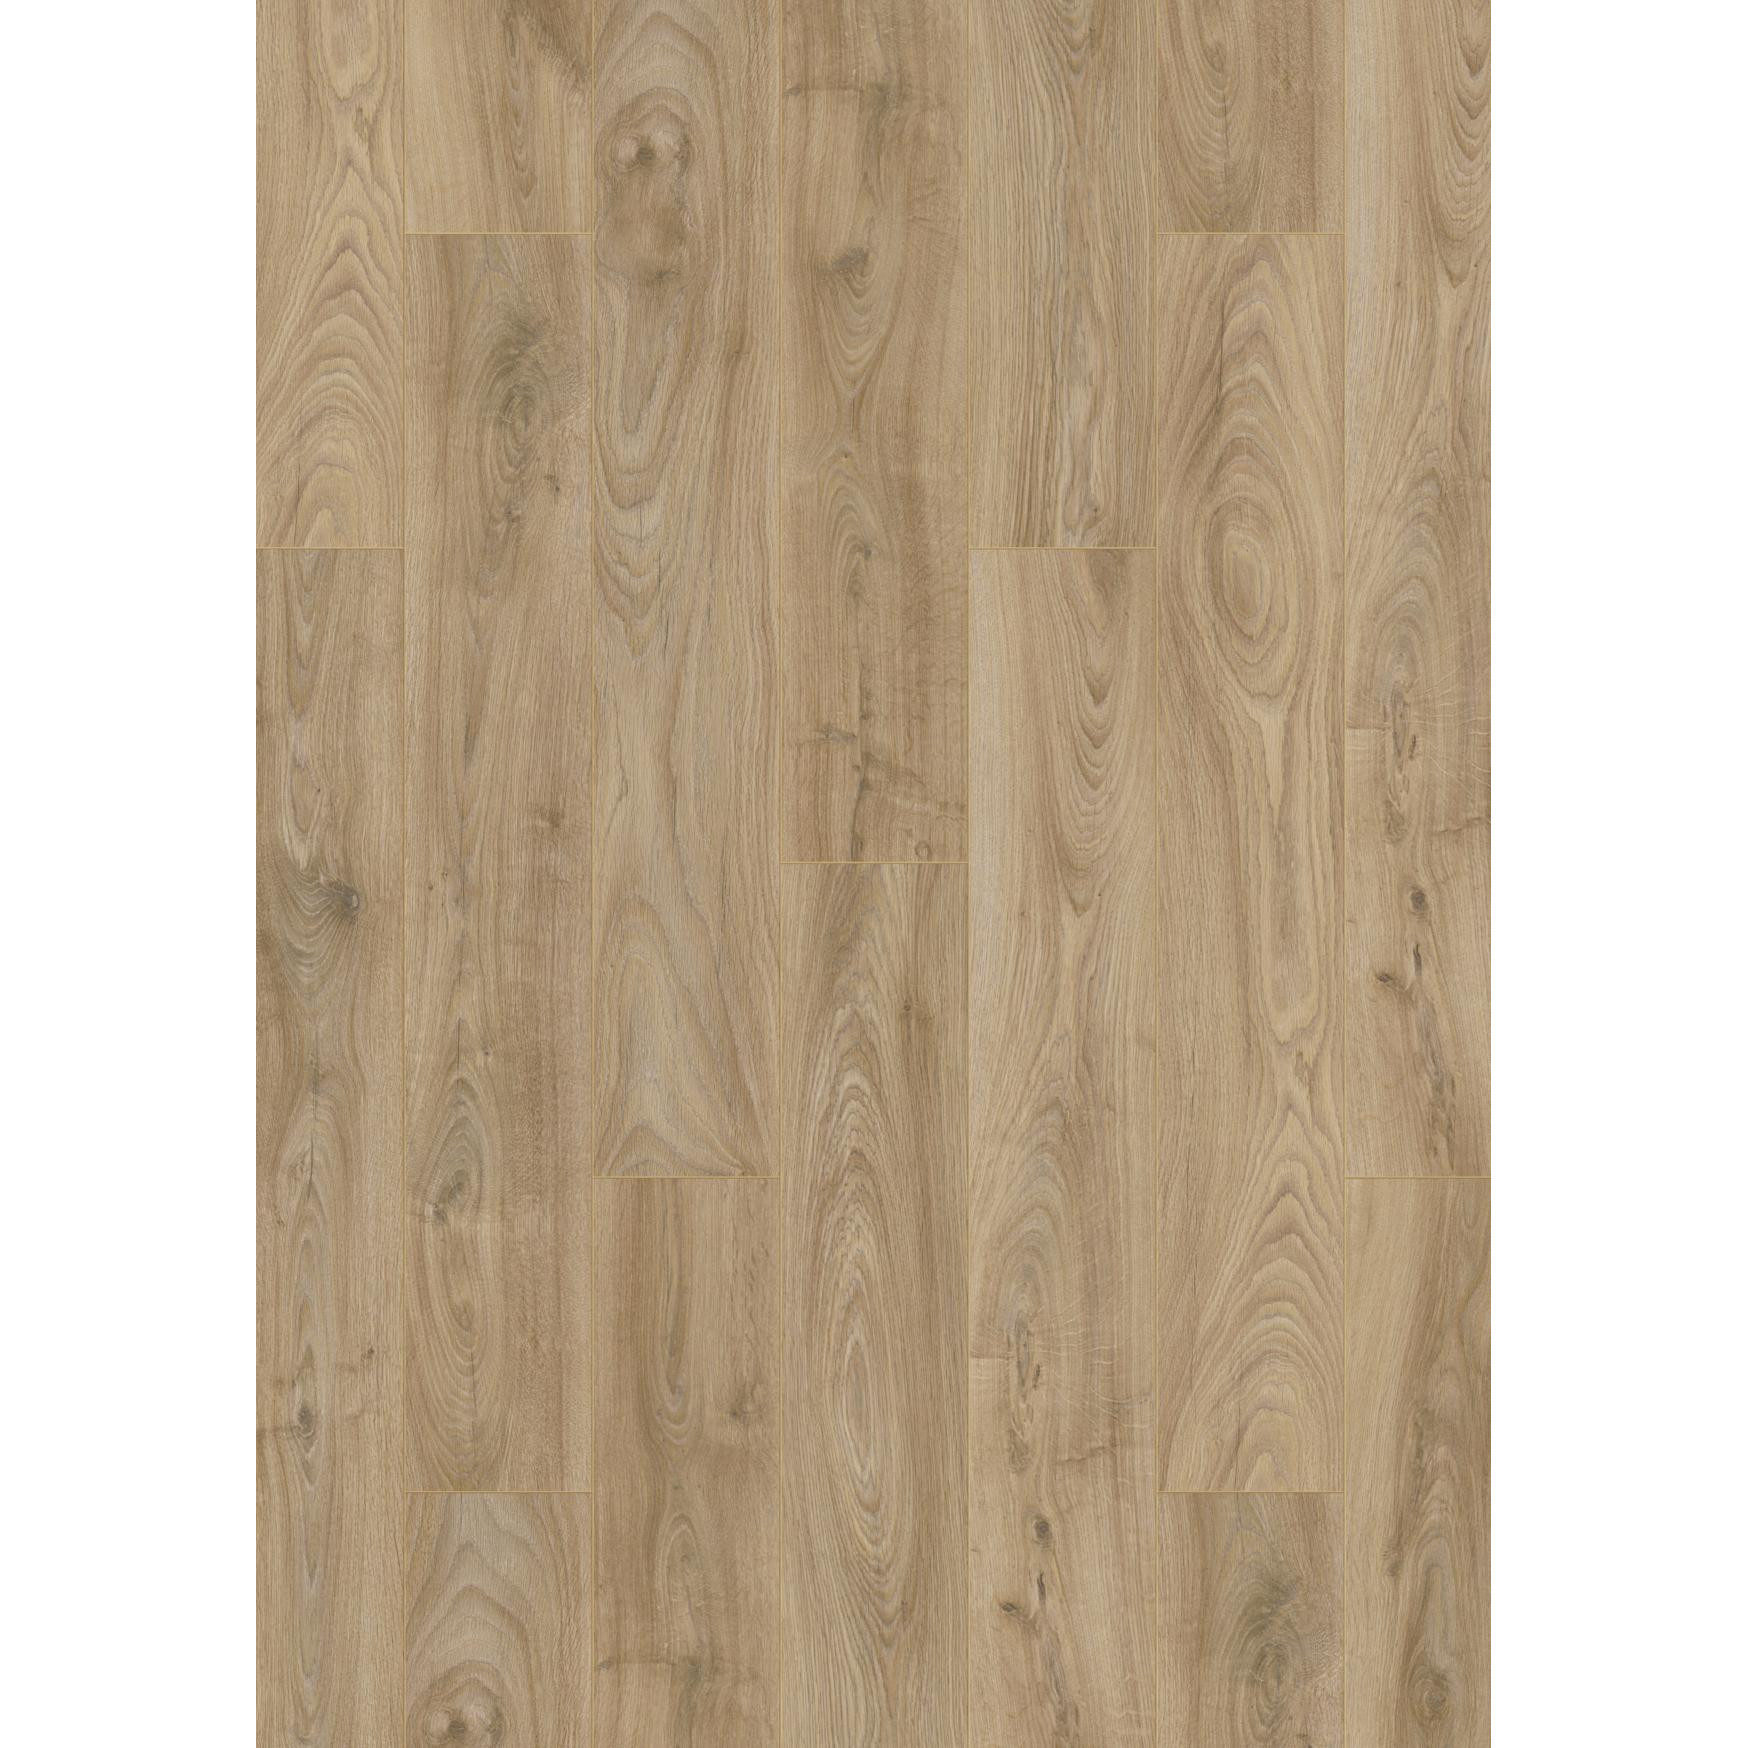 BinylPro Warm Wood Heirloom Oak 1519 - зображення 1